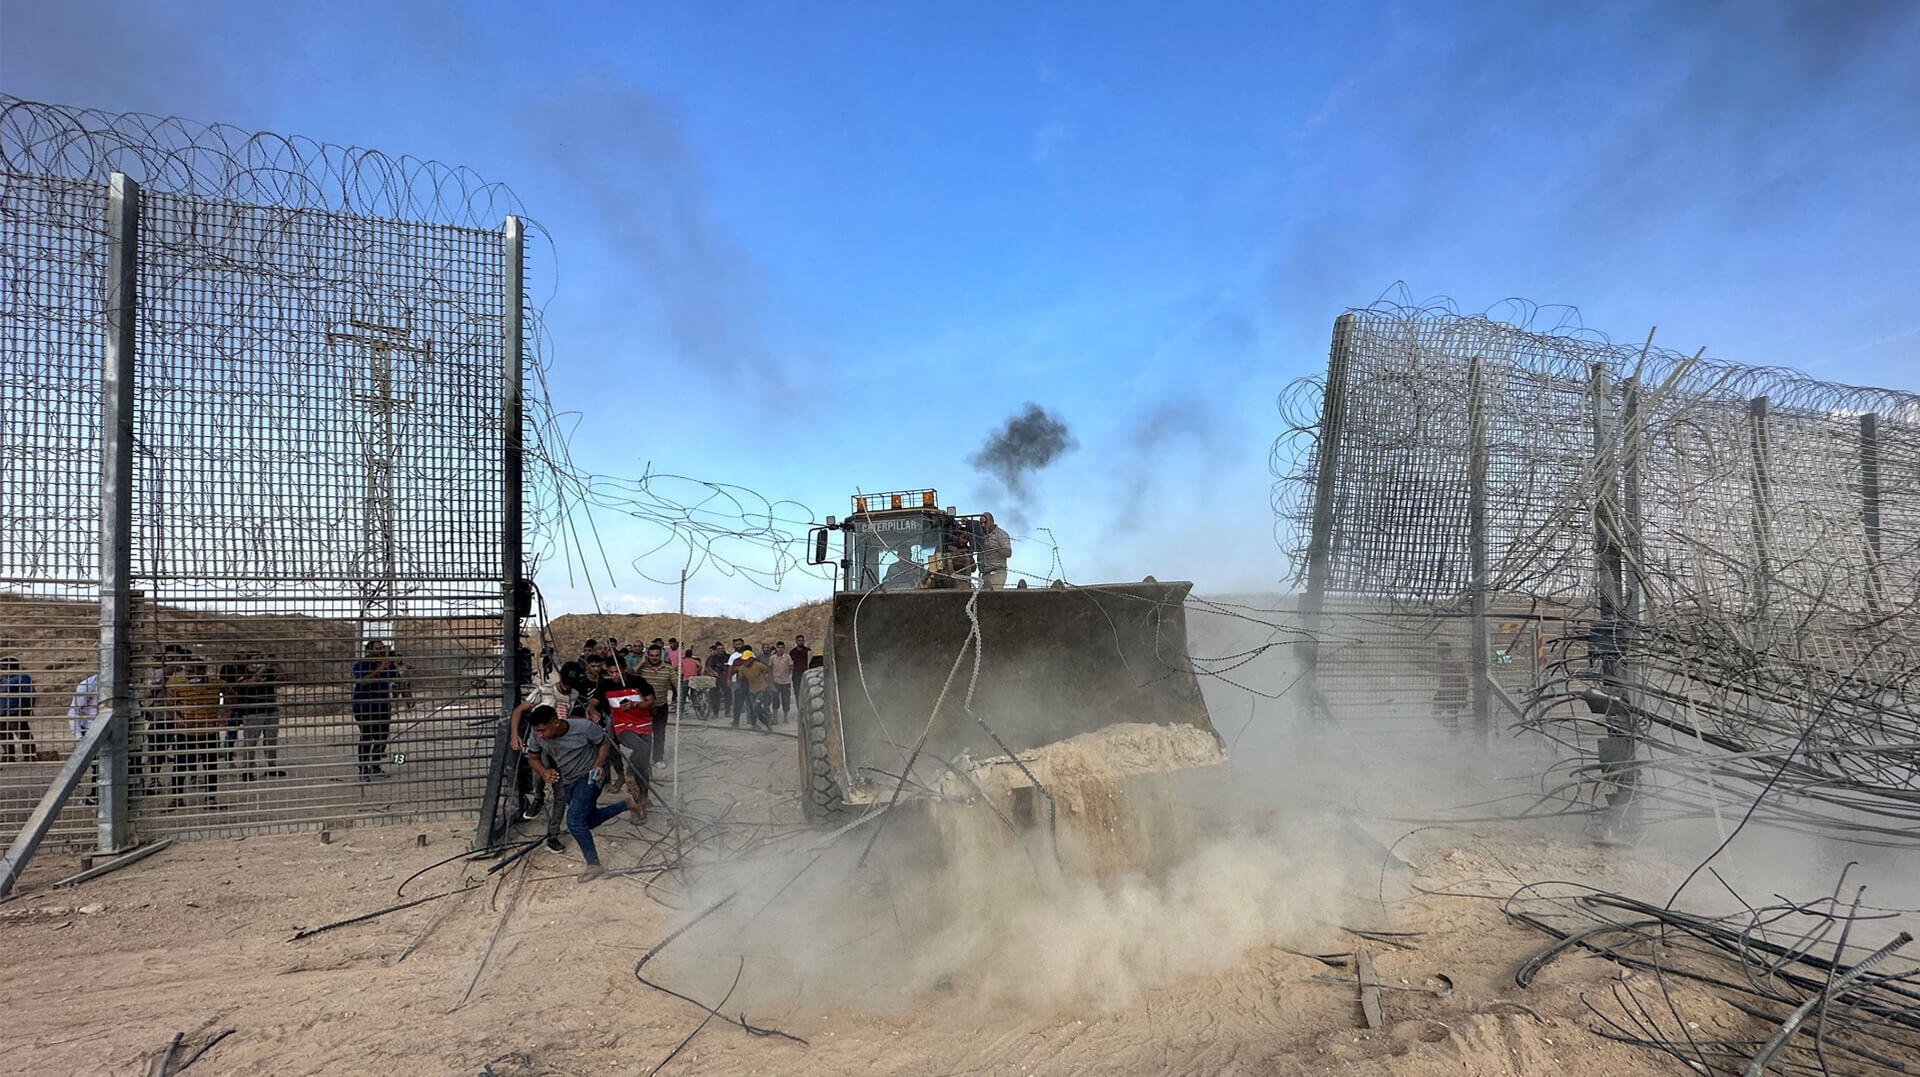 חמאס פורץ את הגדר בגבול עזה בשבת. "הגדר נבנתה תחת תצפיות חמאס שראה כל פעולה ובחן לאיזה עומק מורידים את המכשול בתוך הקרקע"